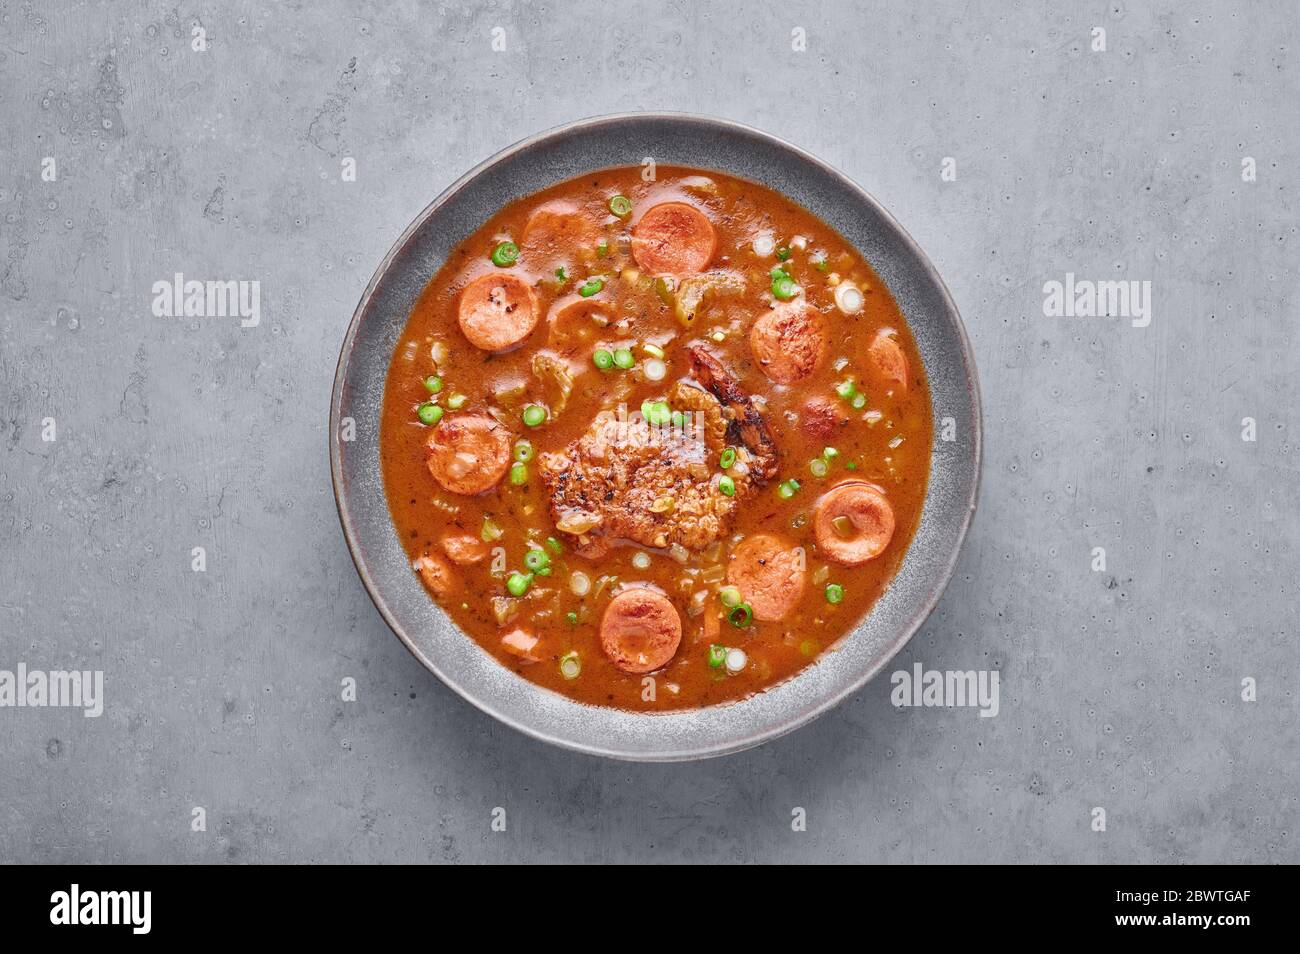 Hähnchen und Wurst Gumbo Suppe in grauen Schüssel auf Beton Hintergrund. Gumbo ist louisiana cajun Cuisine Suppe mit Roux. Amerikanische Küche in den USA. Traditionelle Ethnische Stockfoto